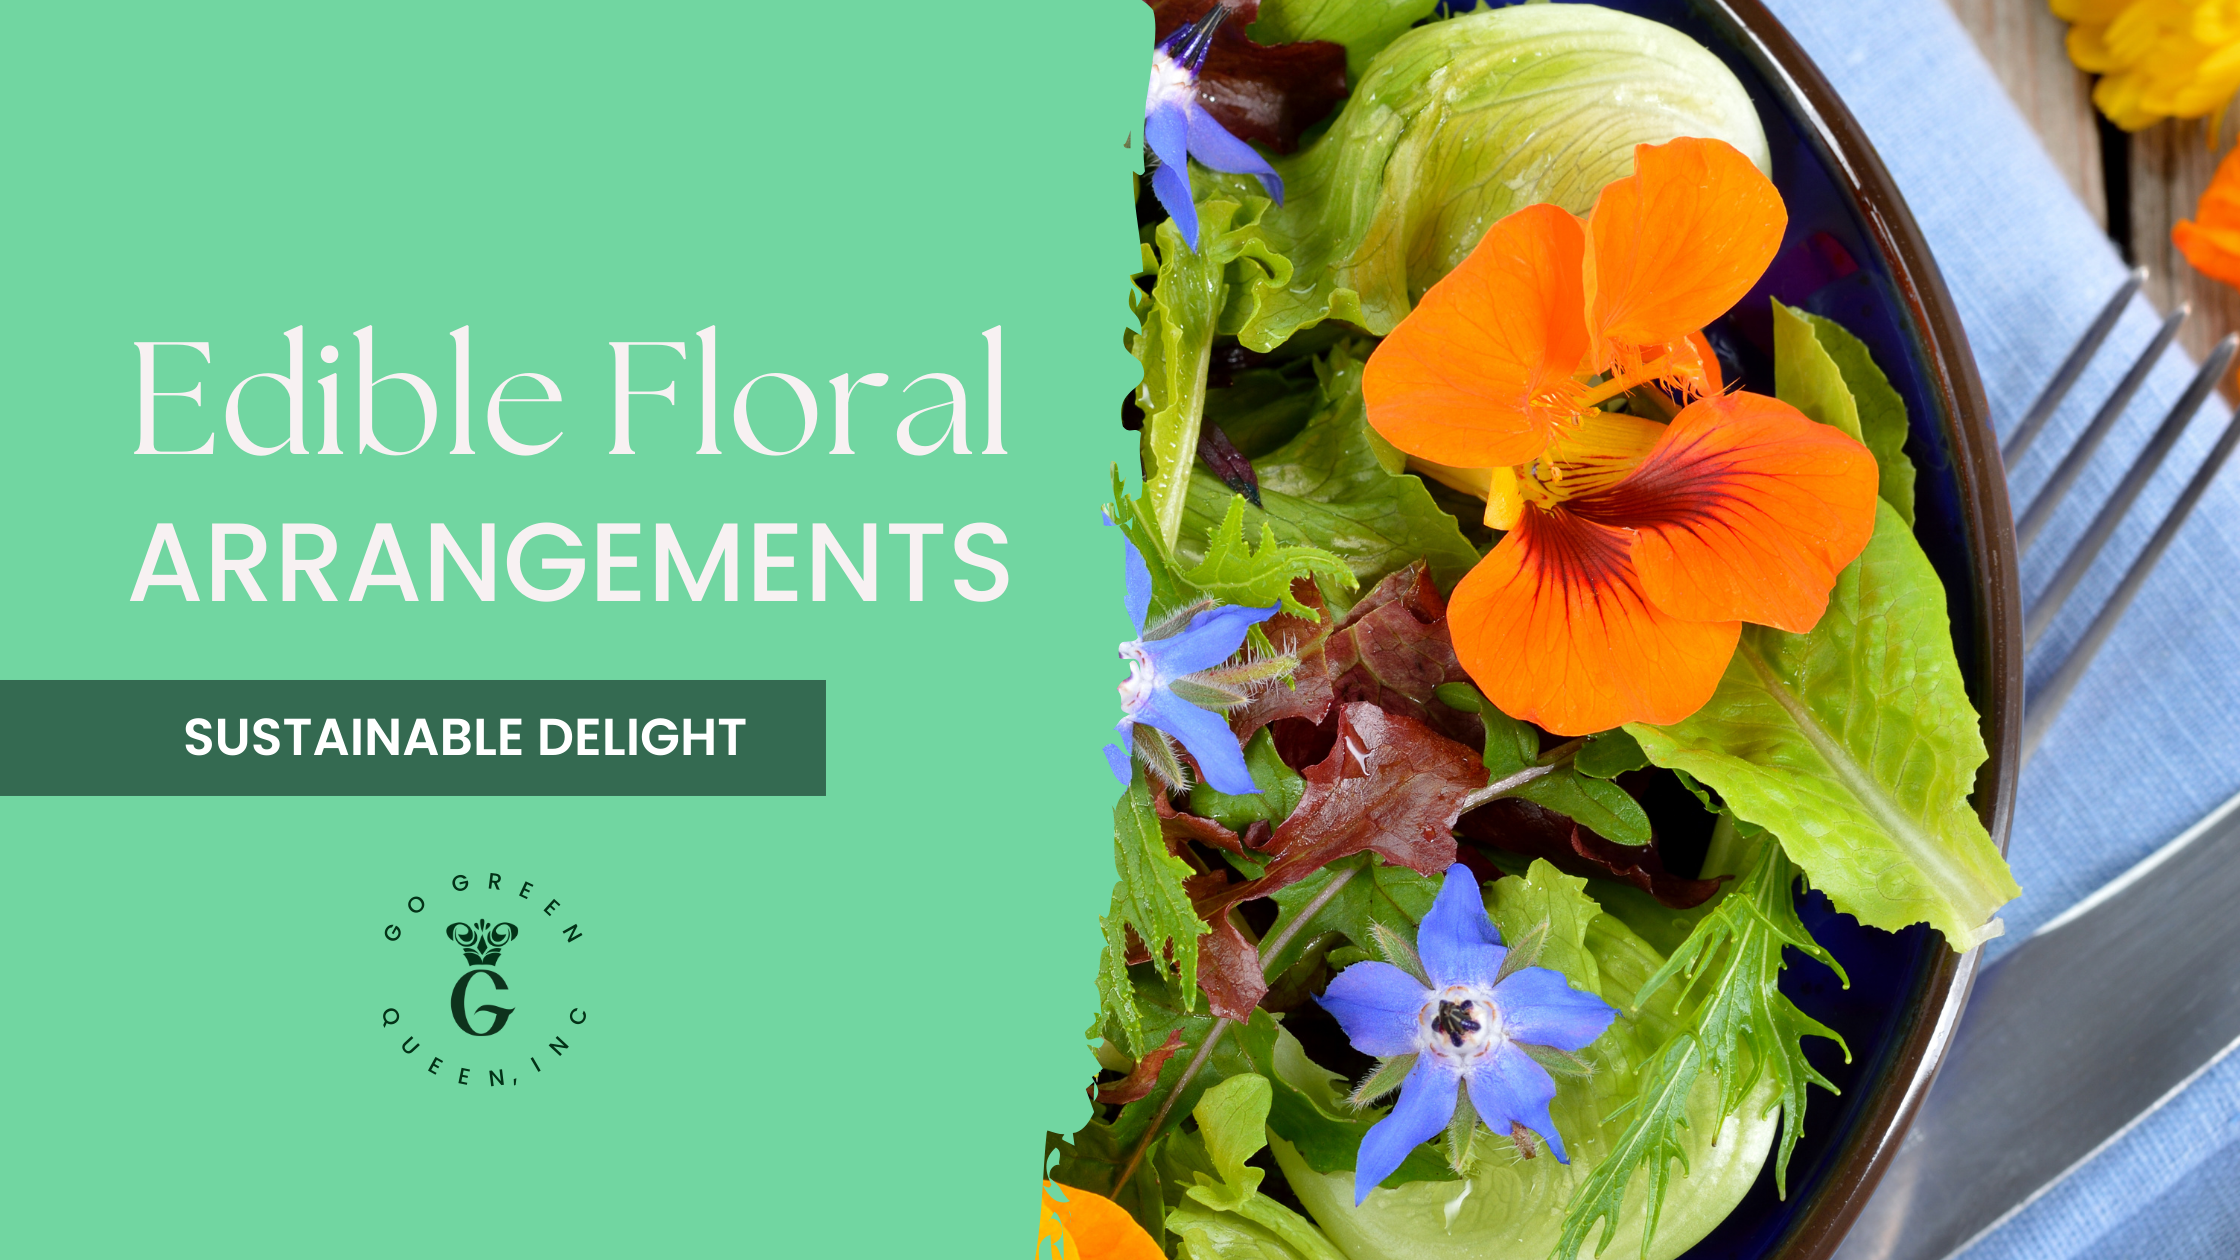 Edible Floral Arrangements: A Sustainable Delight